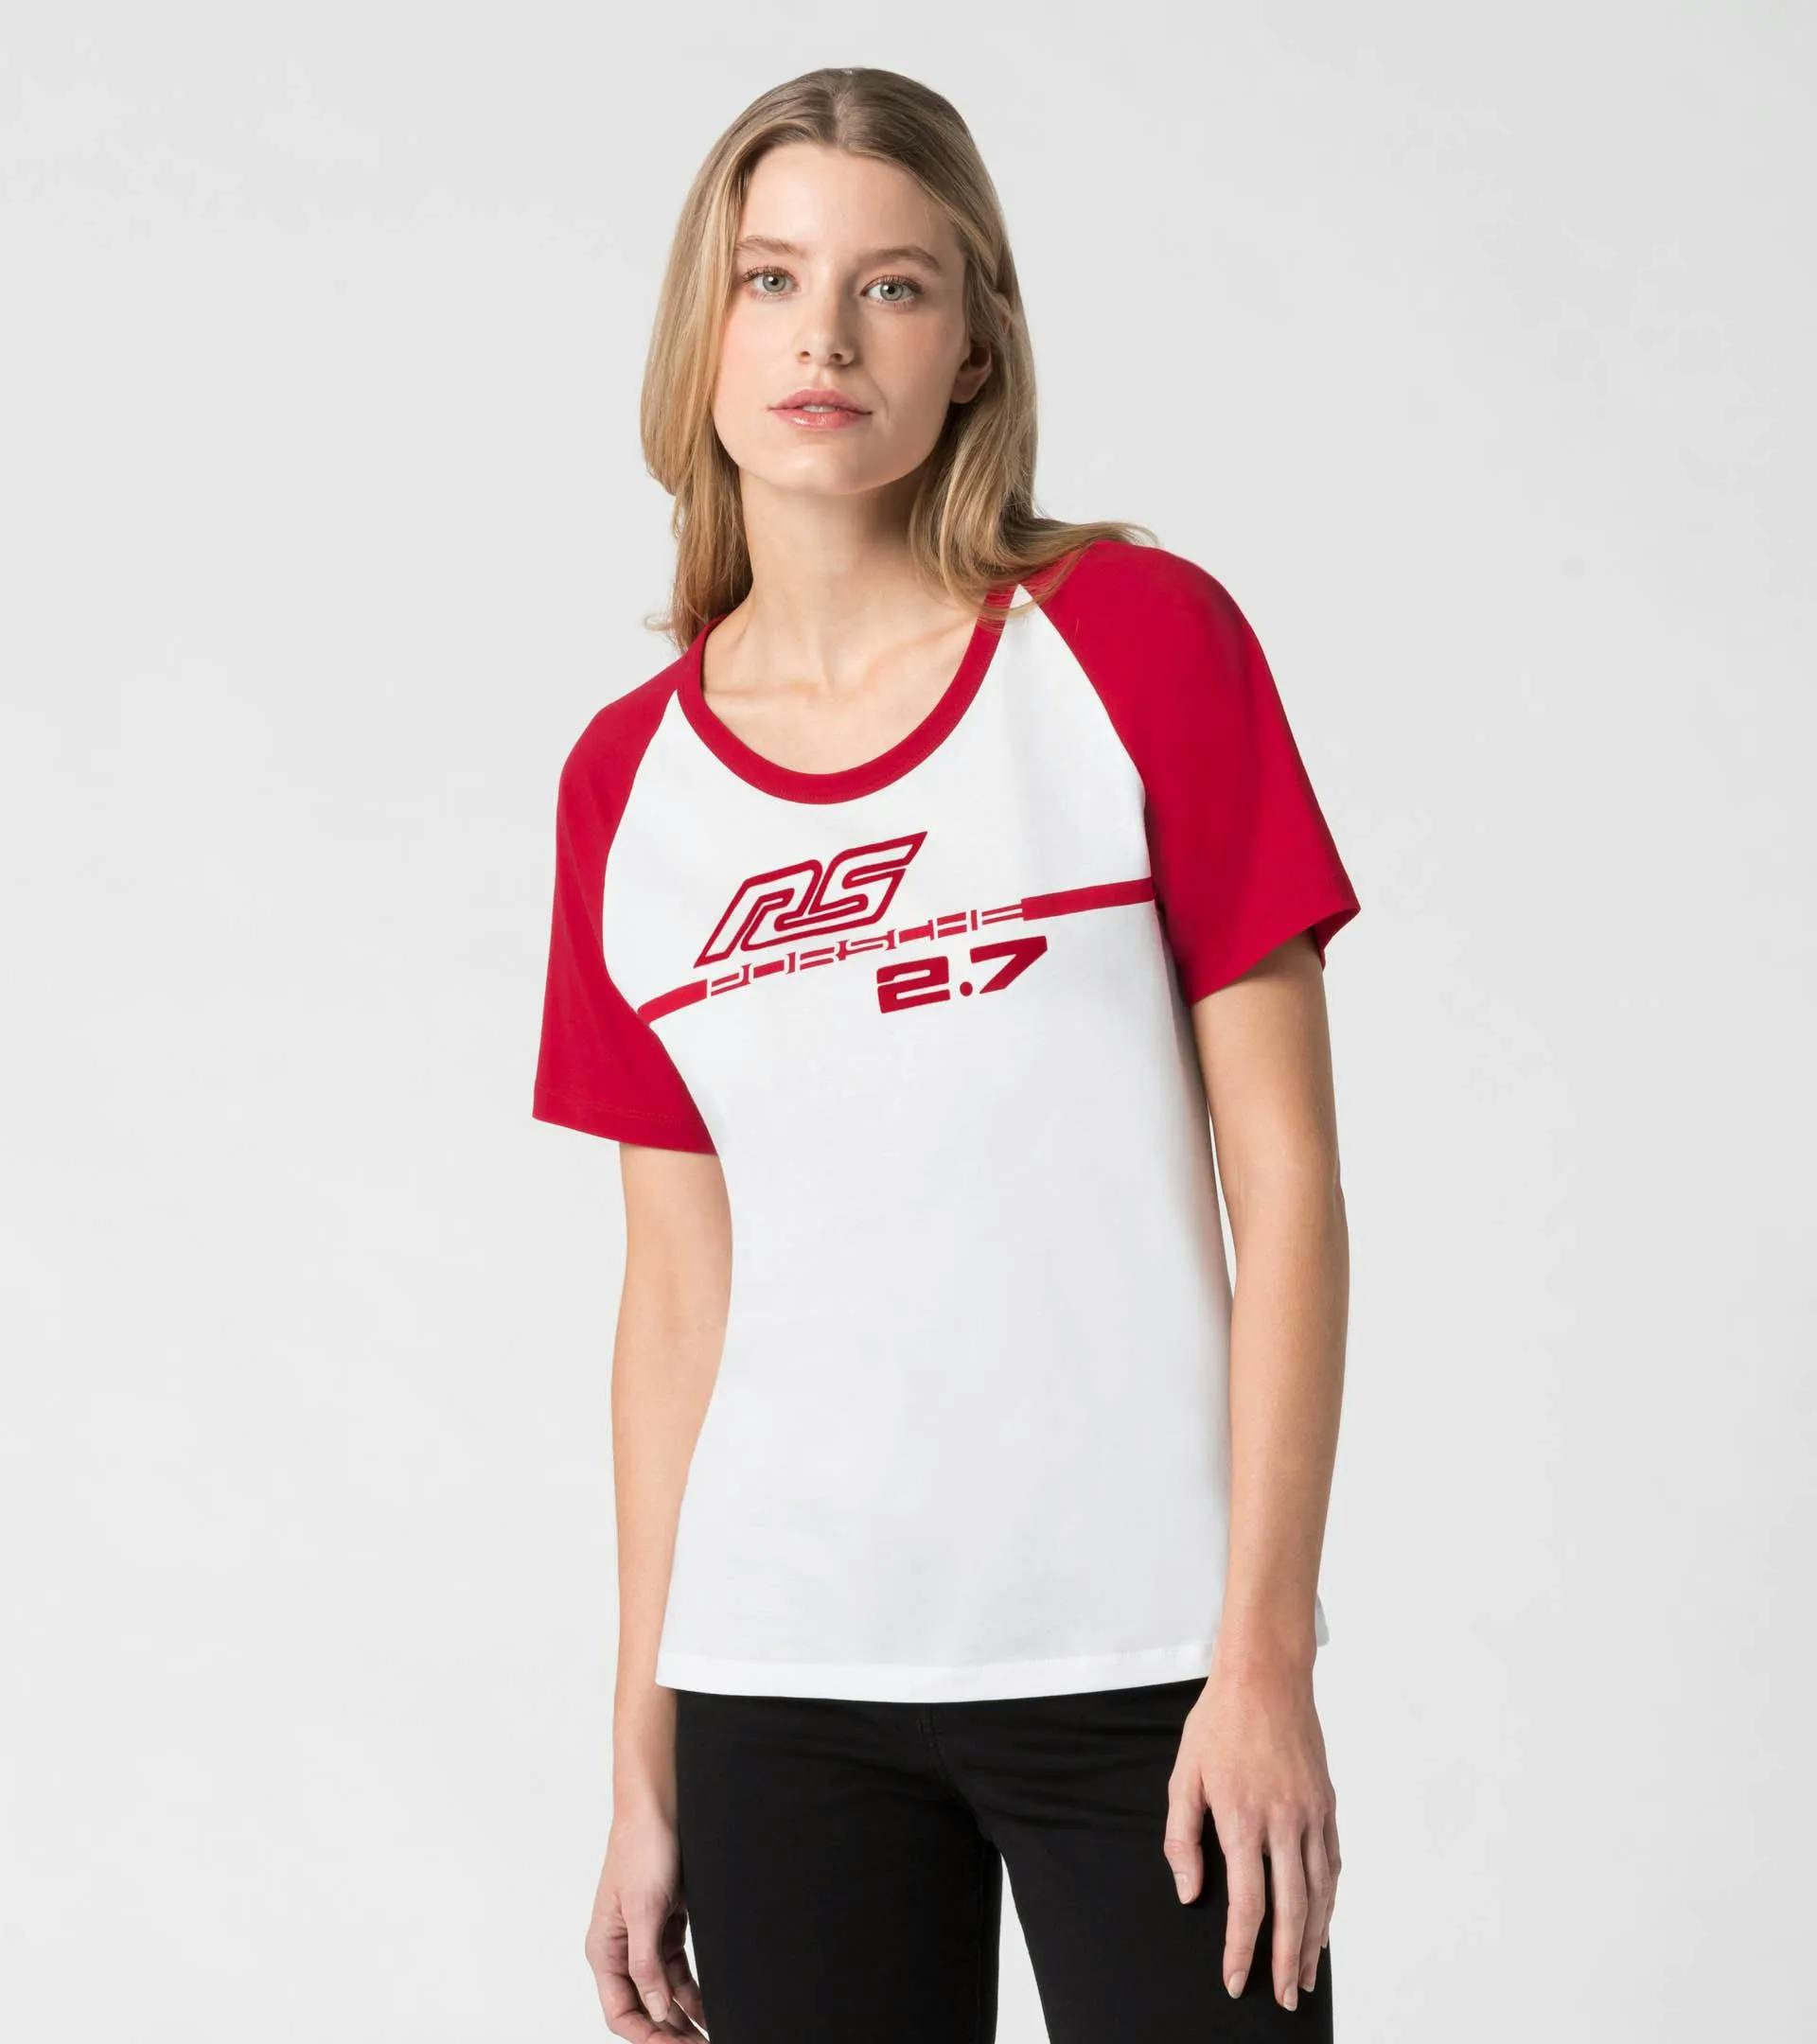 T-shirt femme – RS 2.7 5